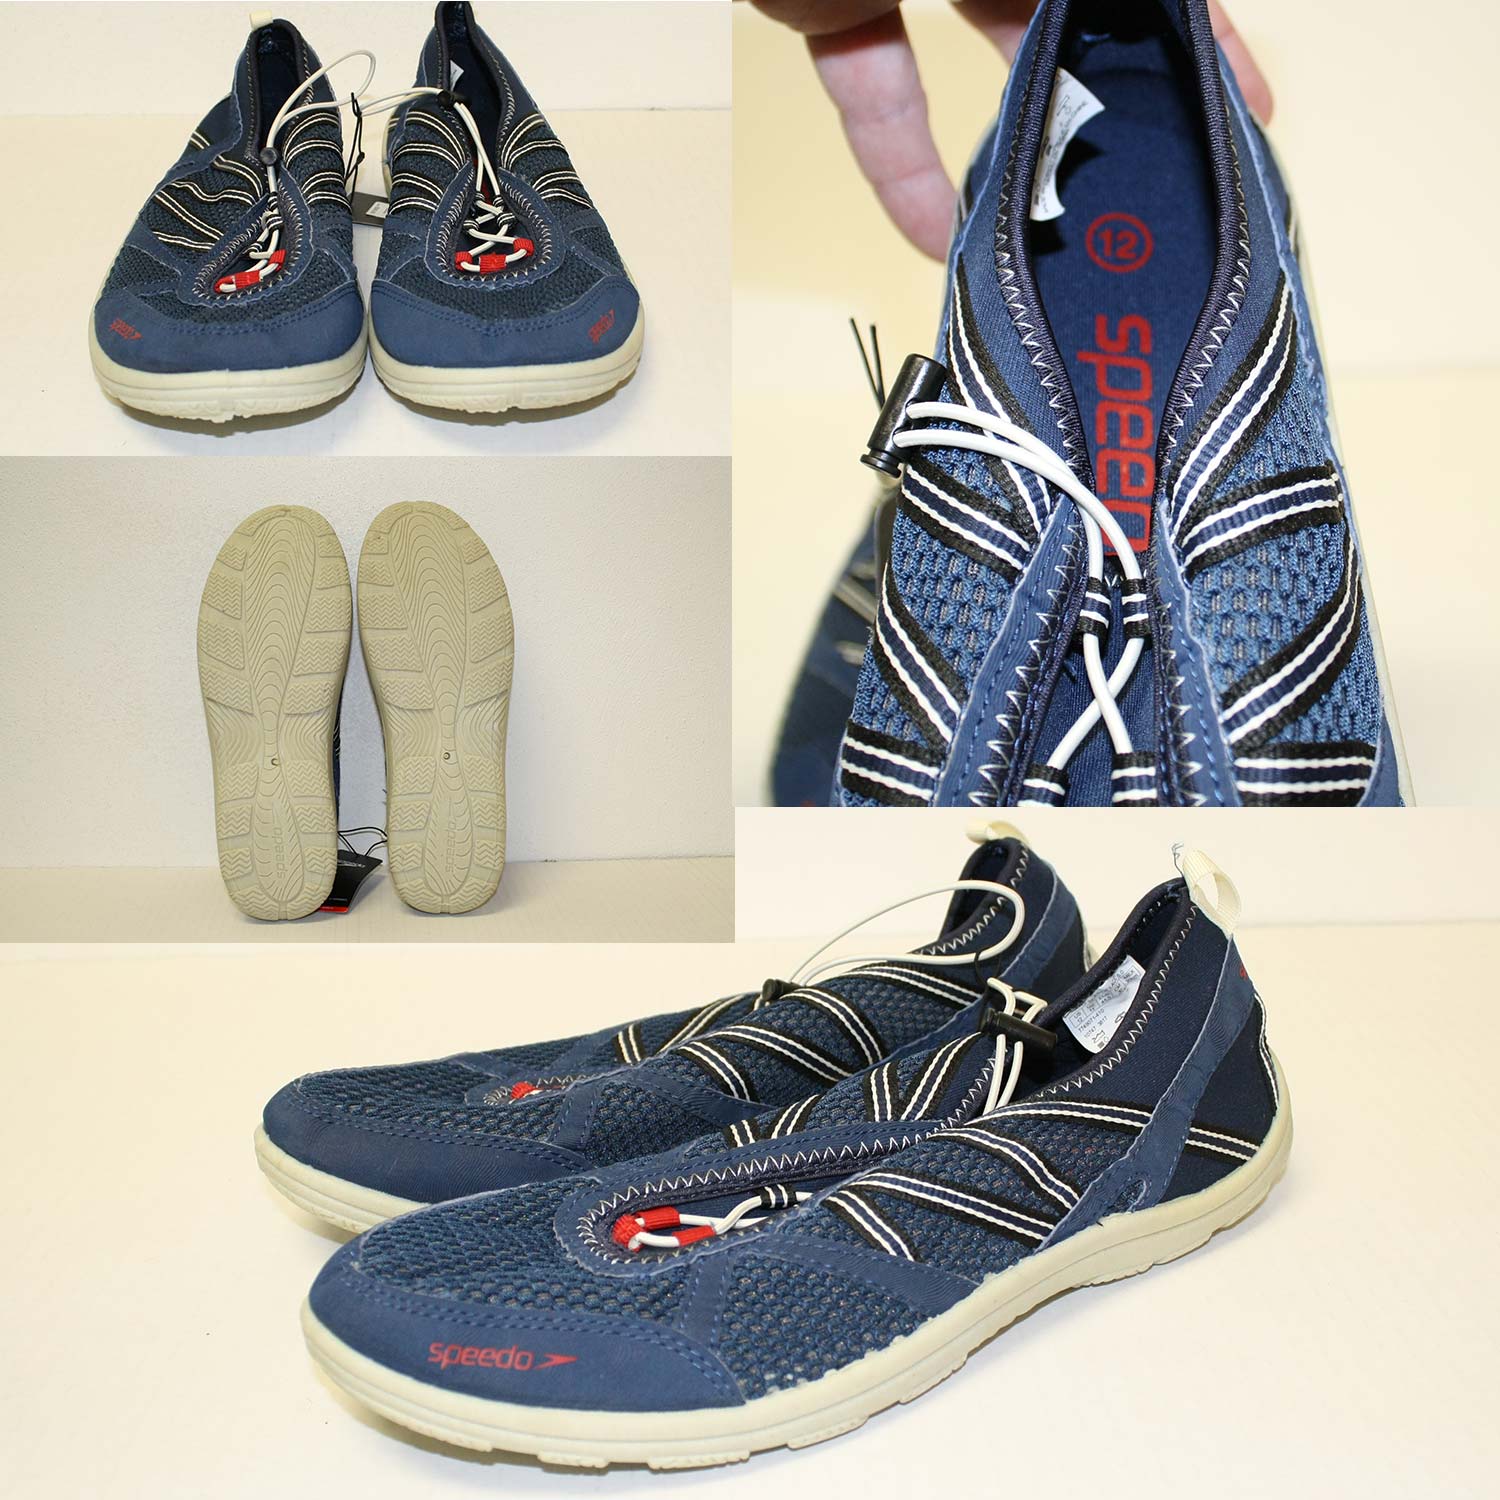 speedo men's seaside lace 5.0 water shoe